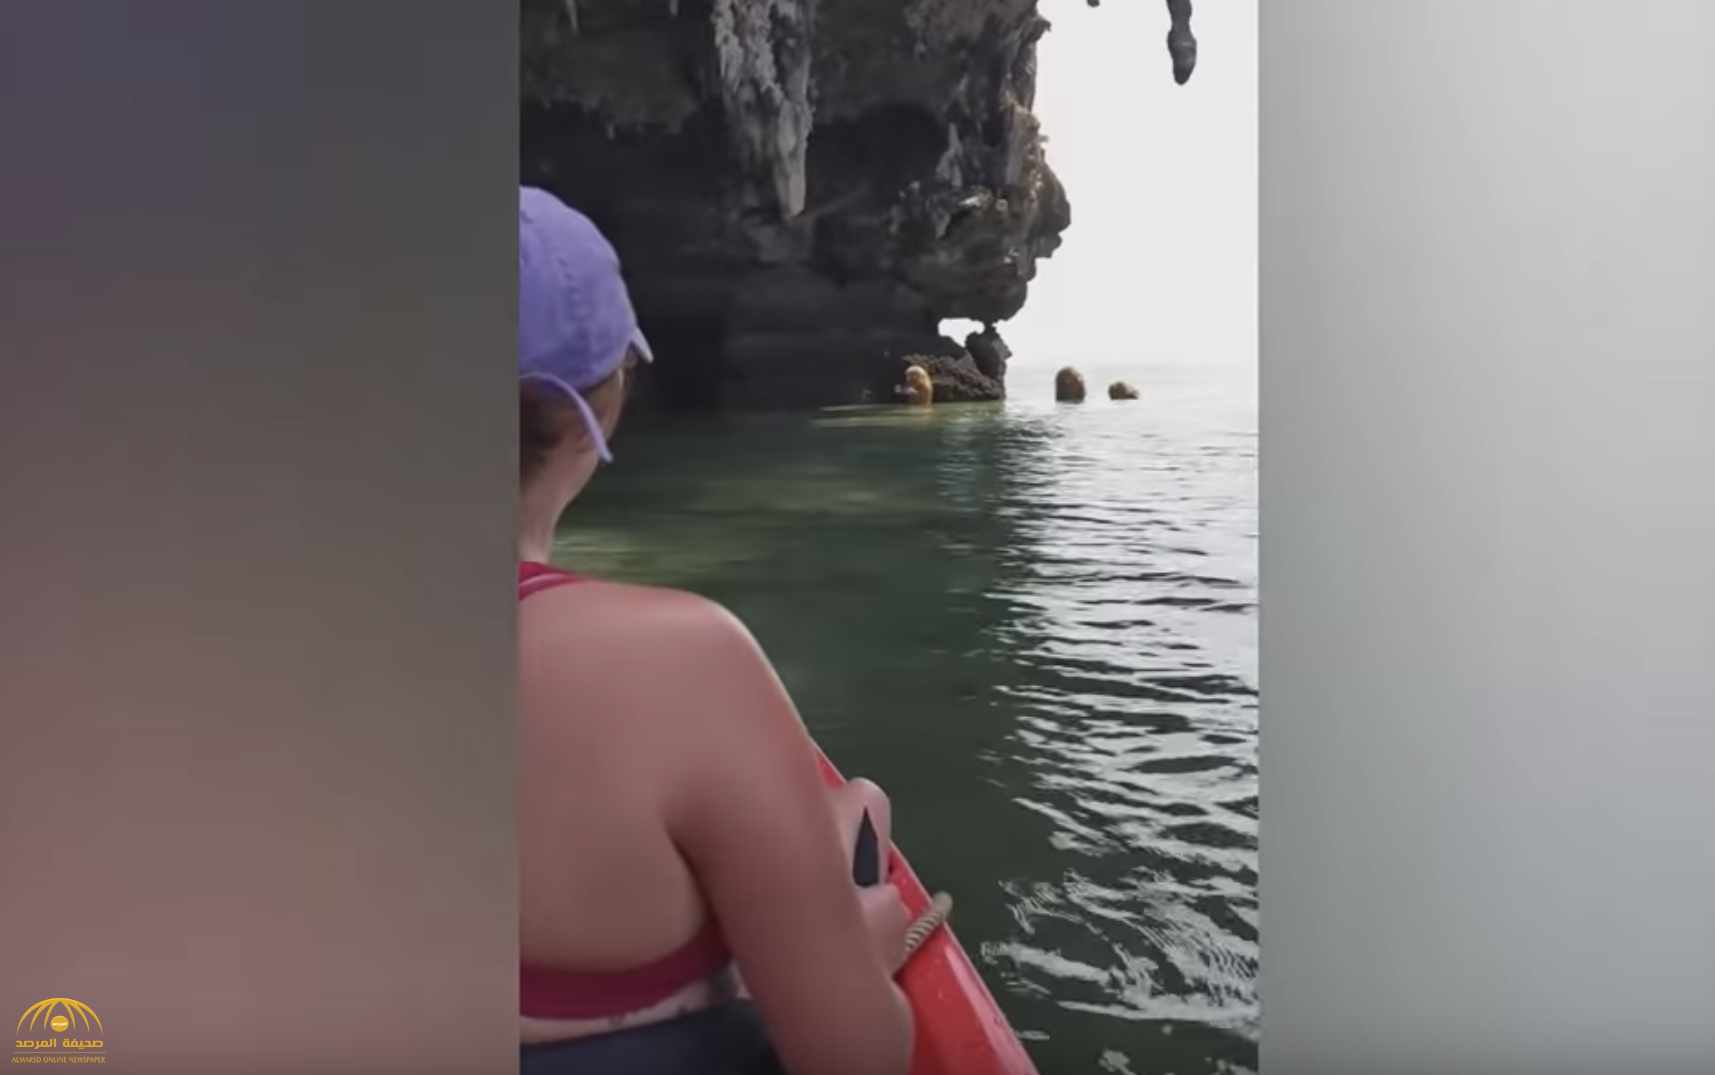 "نصف قرود ونصف بشر" .. ما حقيقة مخلوقات غير مألوفة اكتشفت في مياه تايلاند!-فيديو